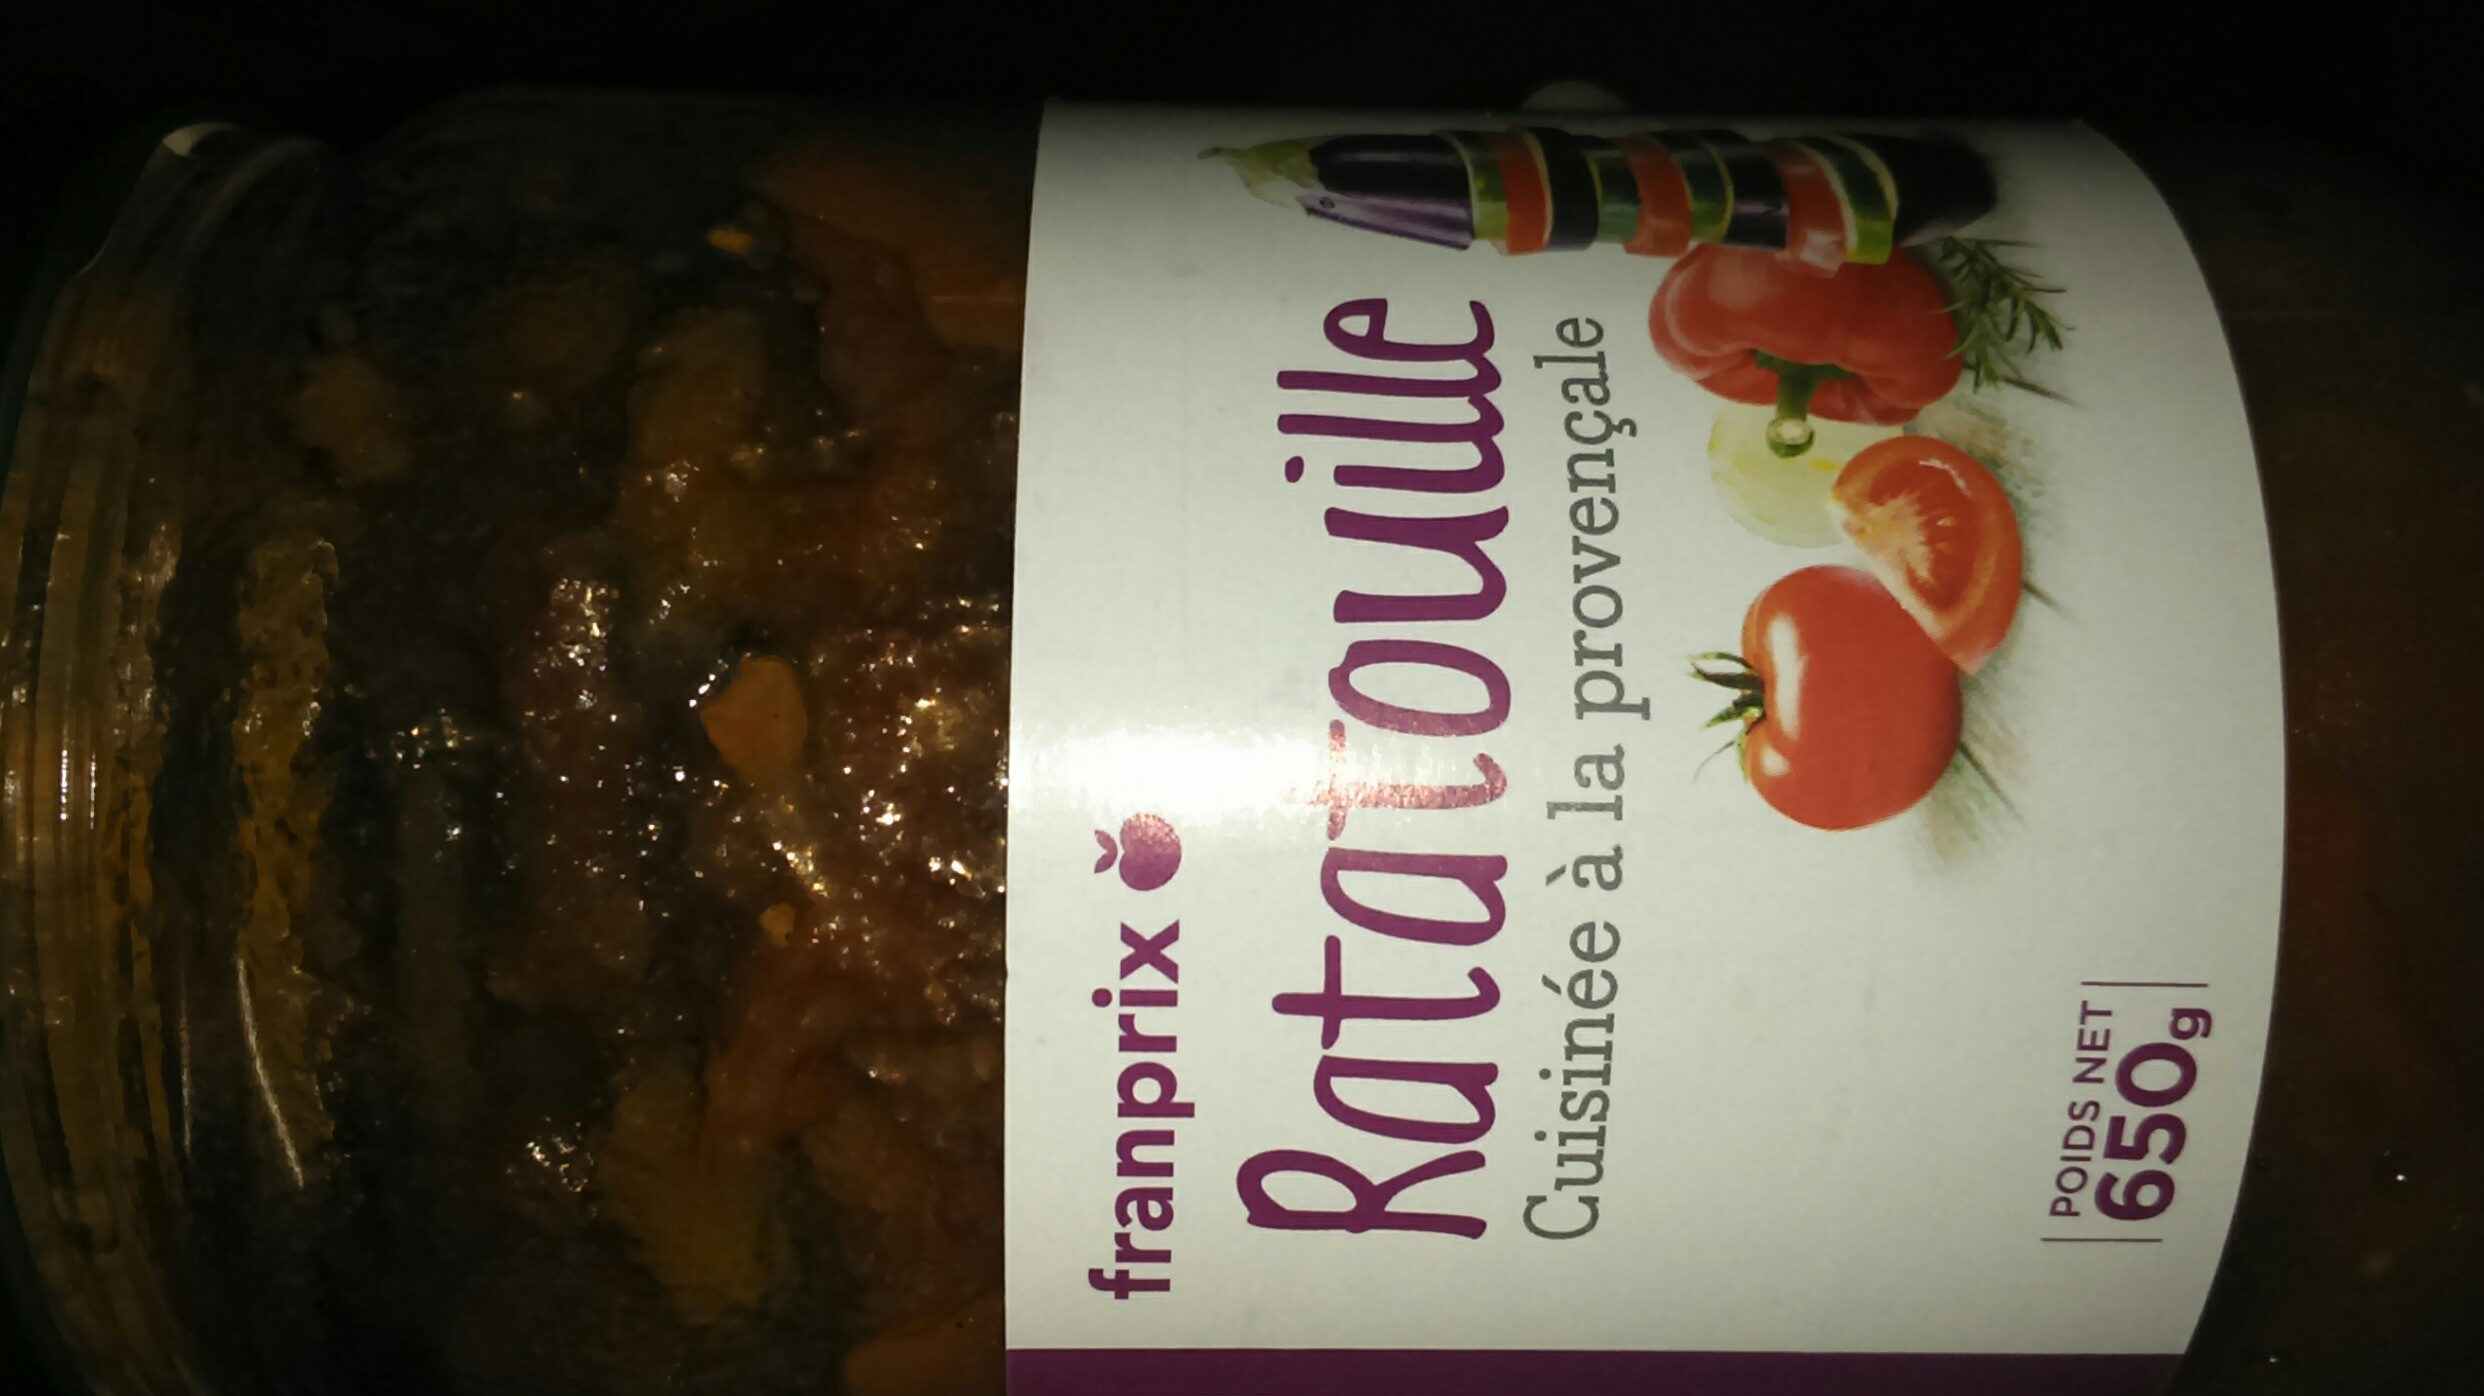 Ratatouille cuisinée à la provençale - Produit